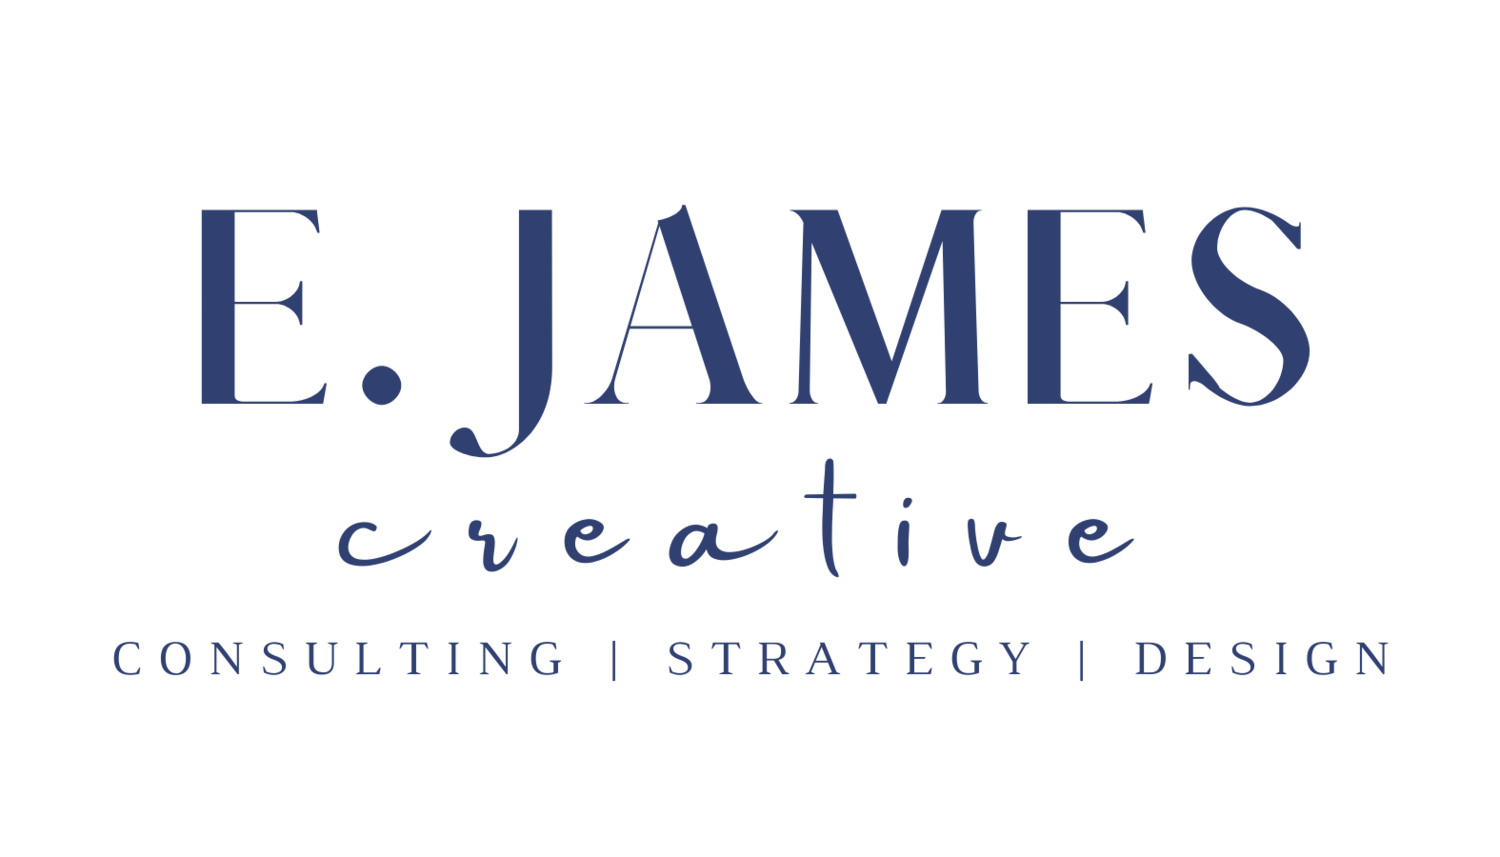 E. JAMES CREATIVE